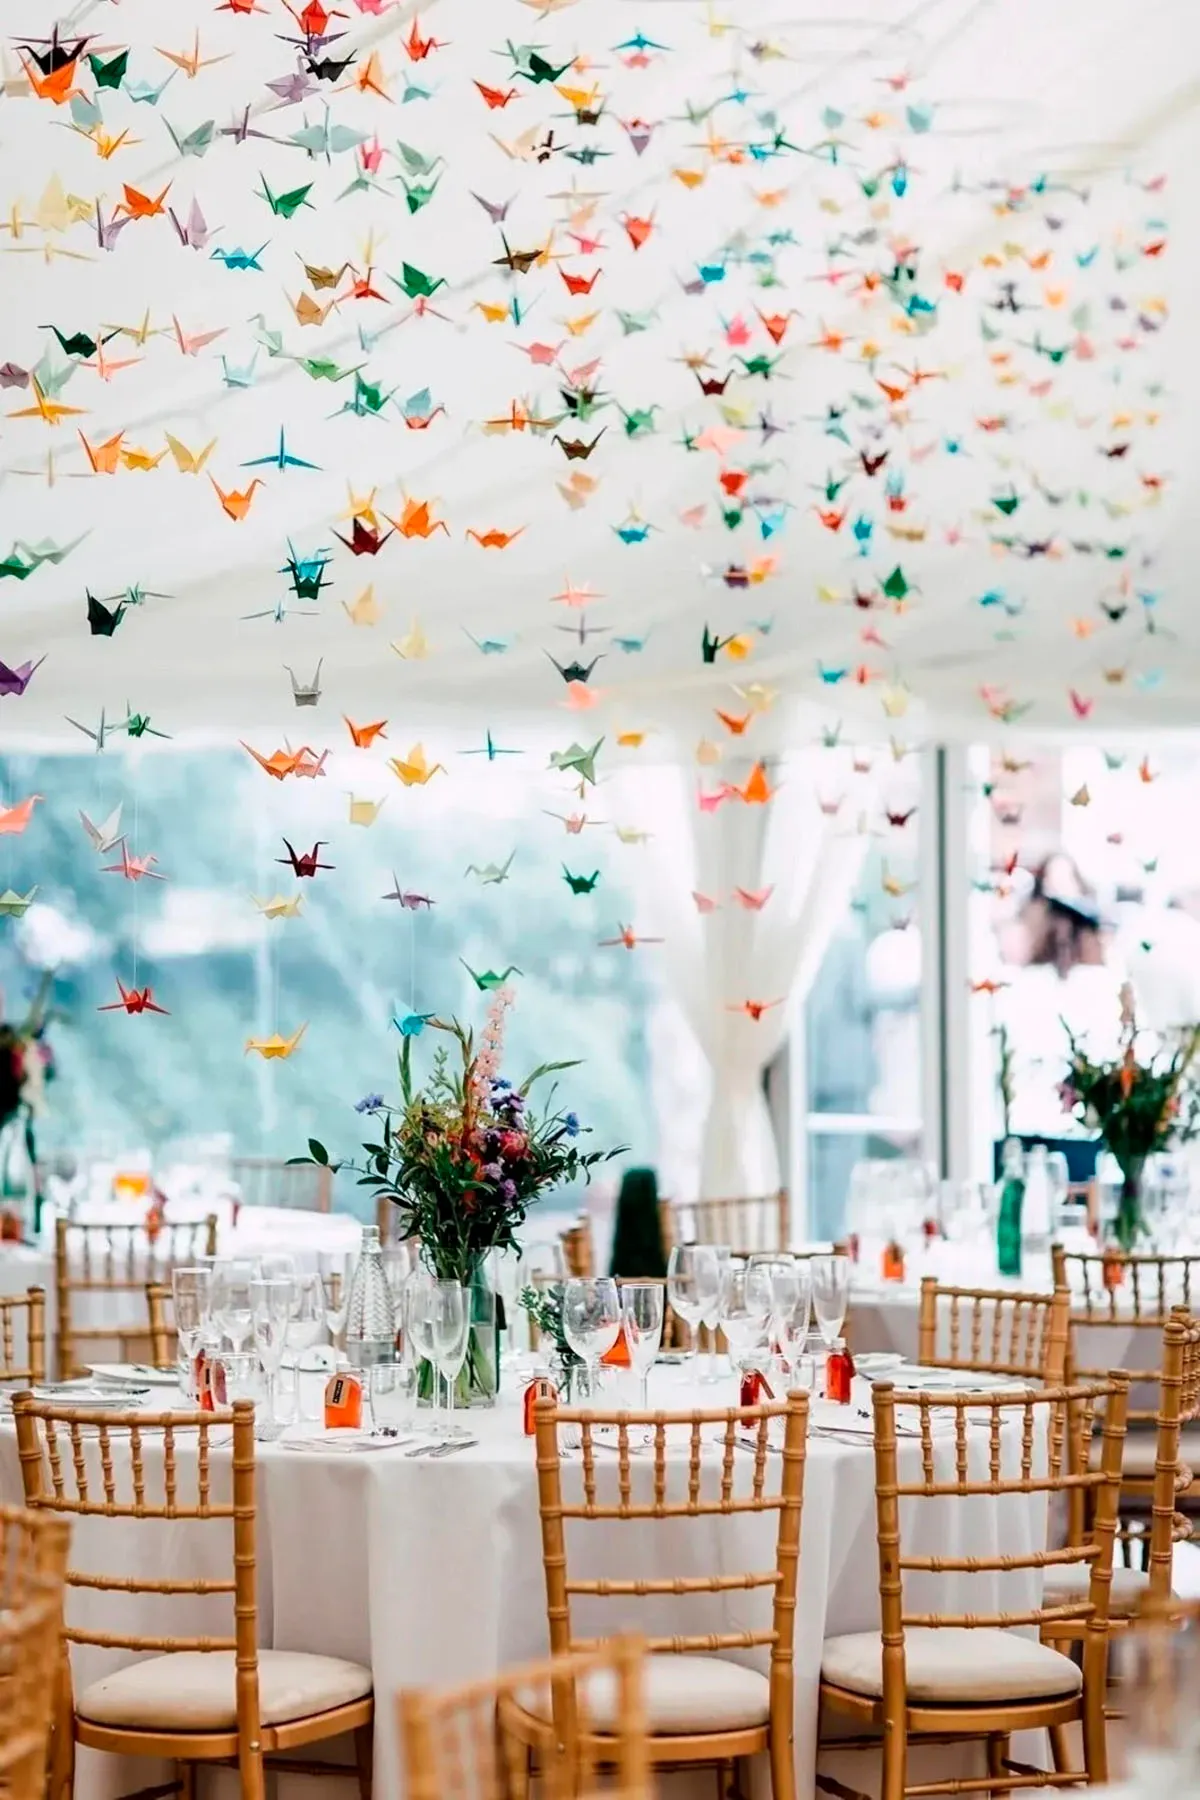 Origami cranes wedding reception decoration idea